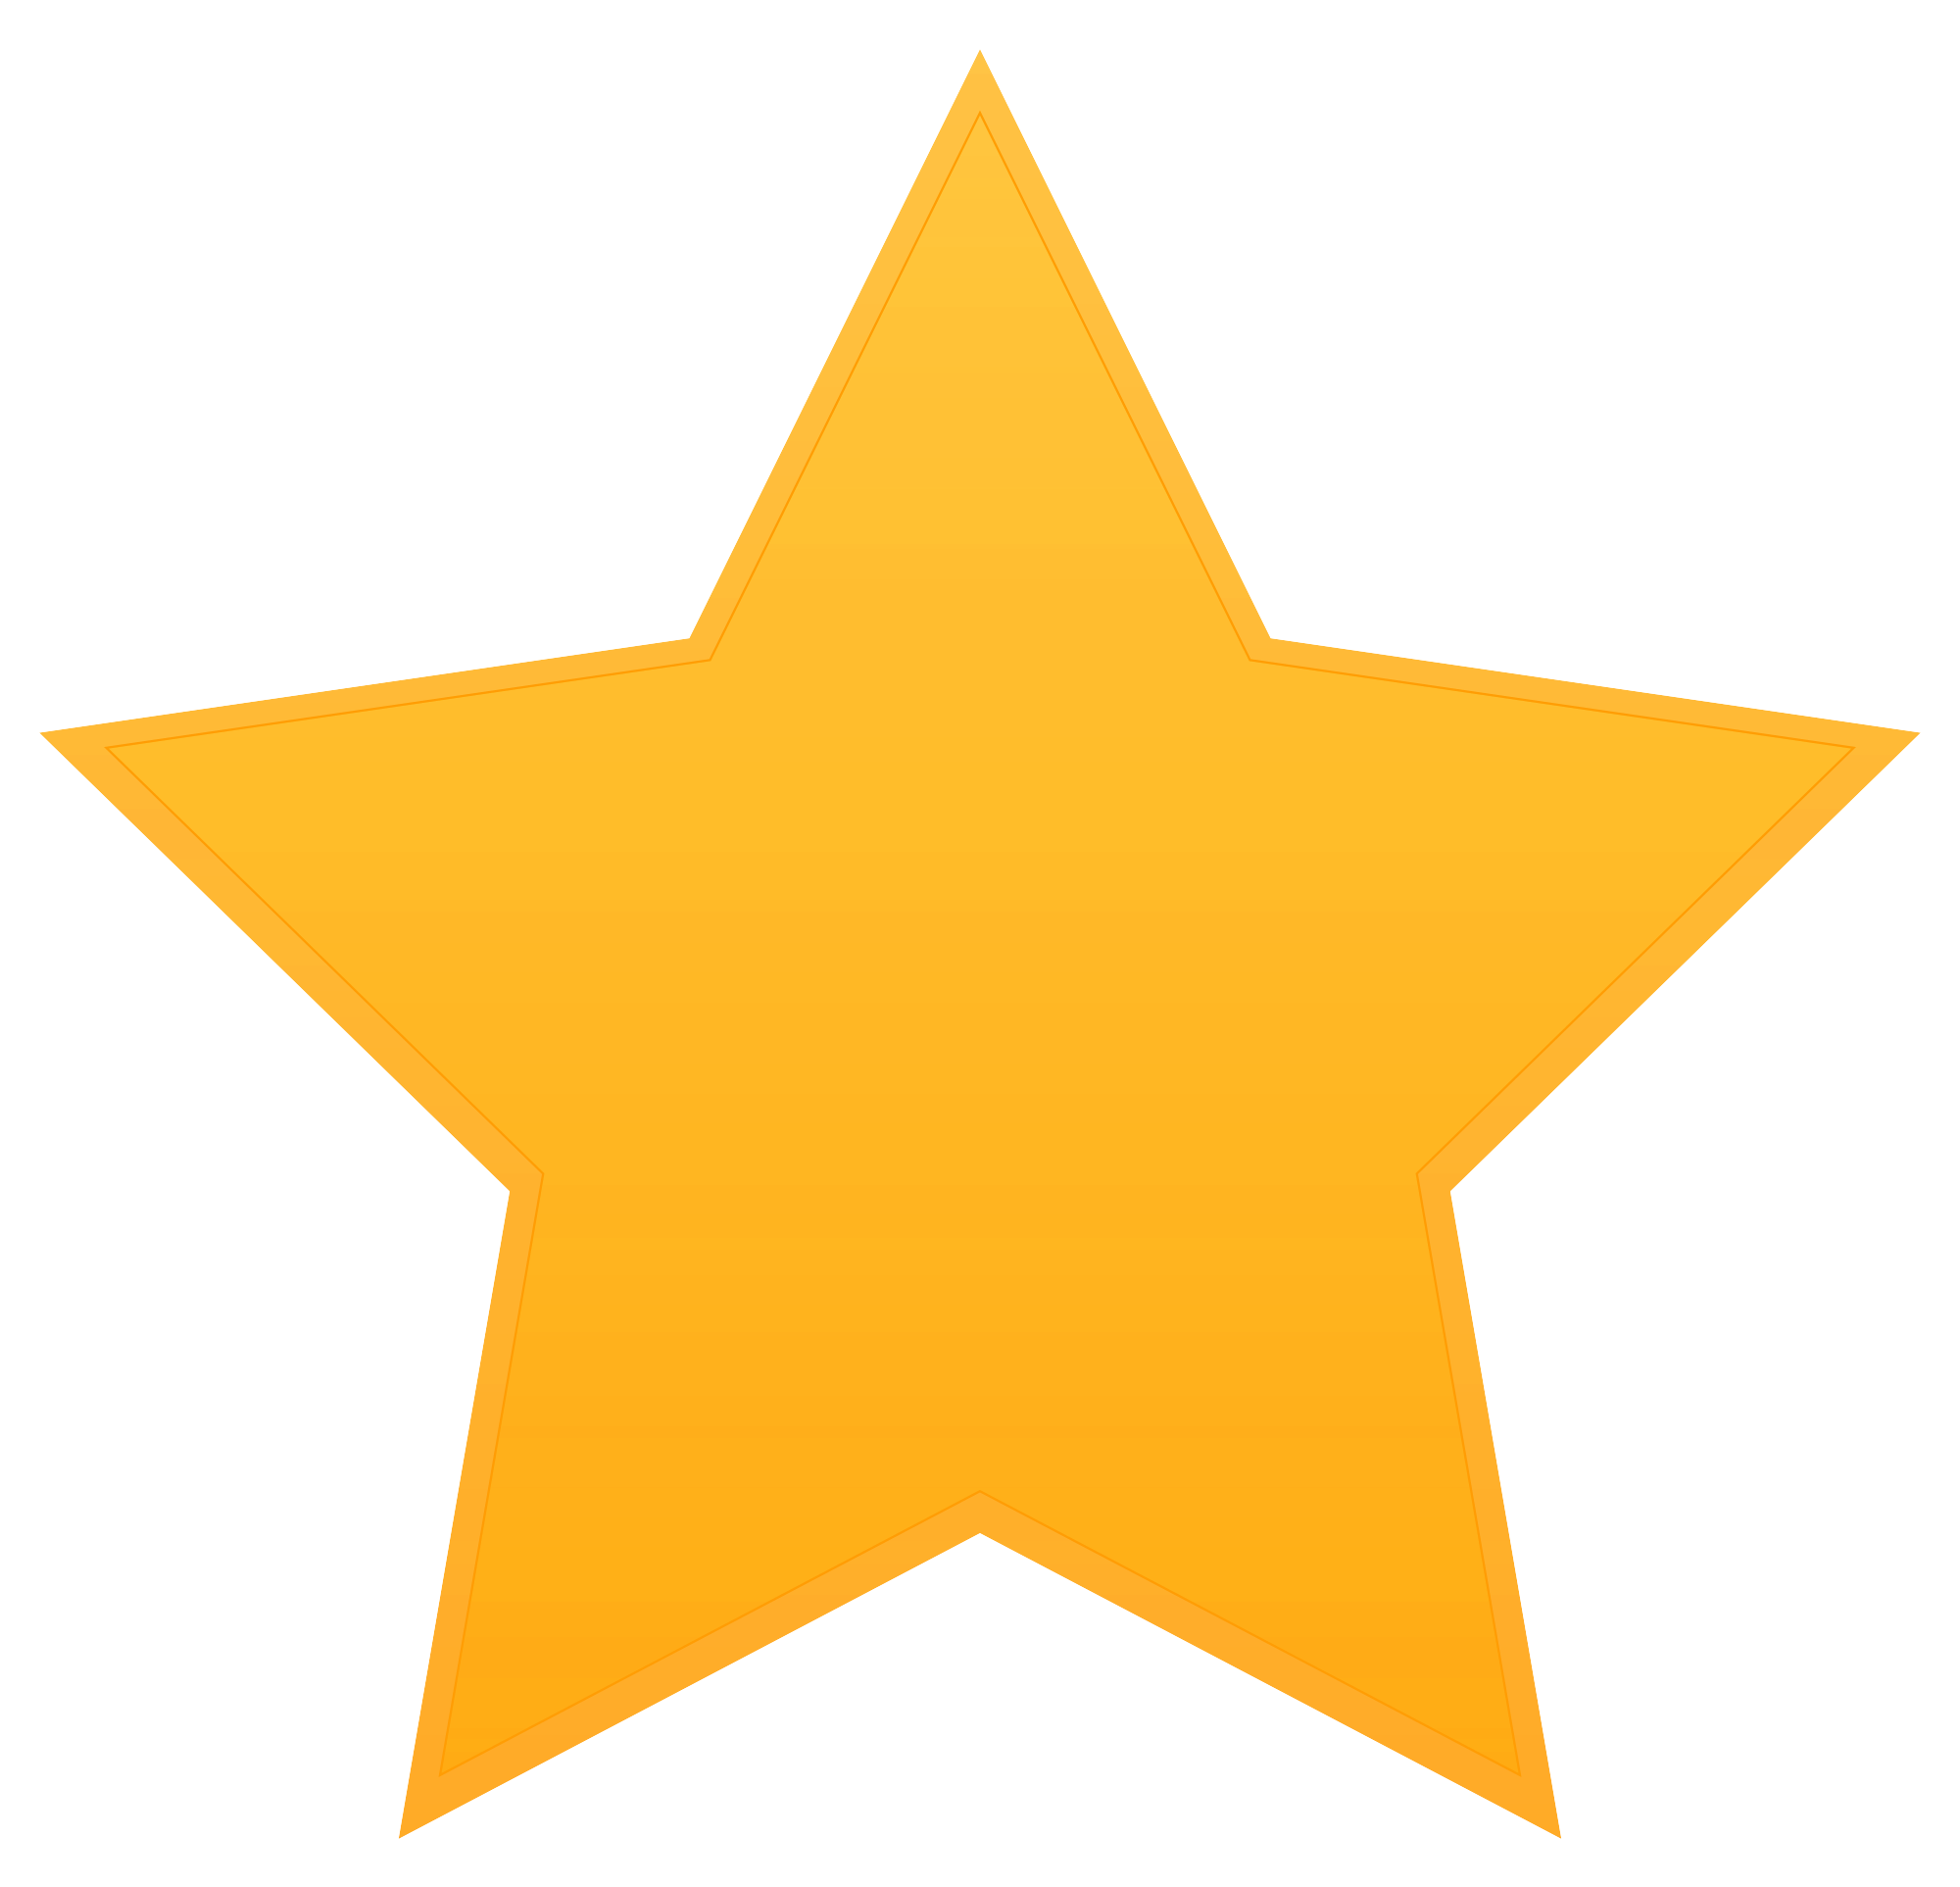 Golden-Star-PNG-Image-File.png